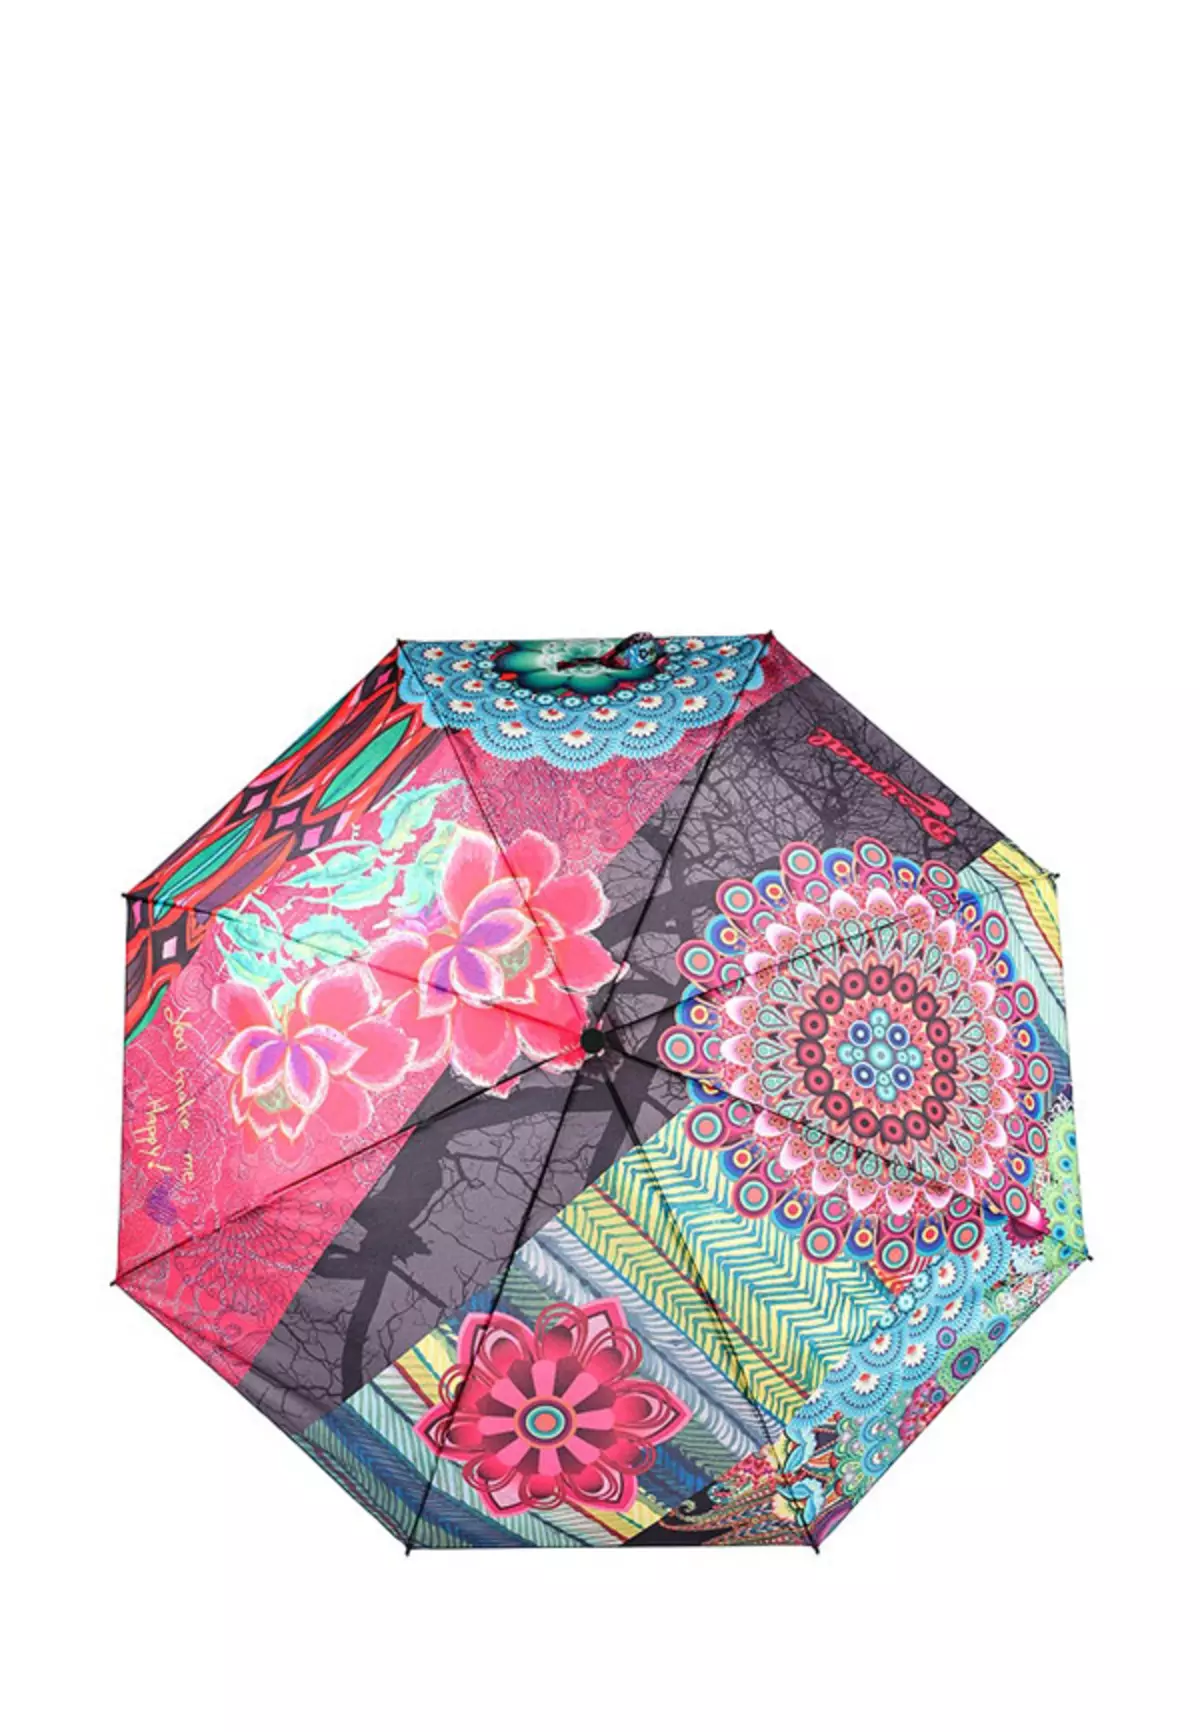 Sunbrella (linepe tse 72): Basali ba bopalai ba purwork upbrella-cane 15238_65